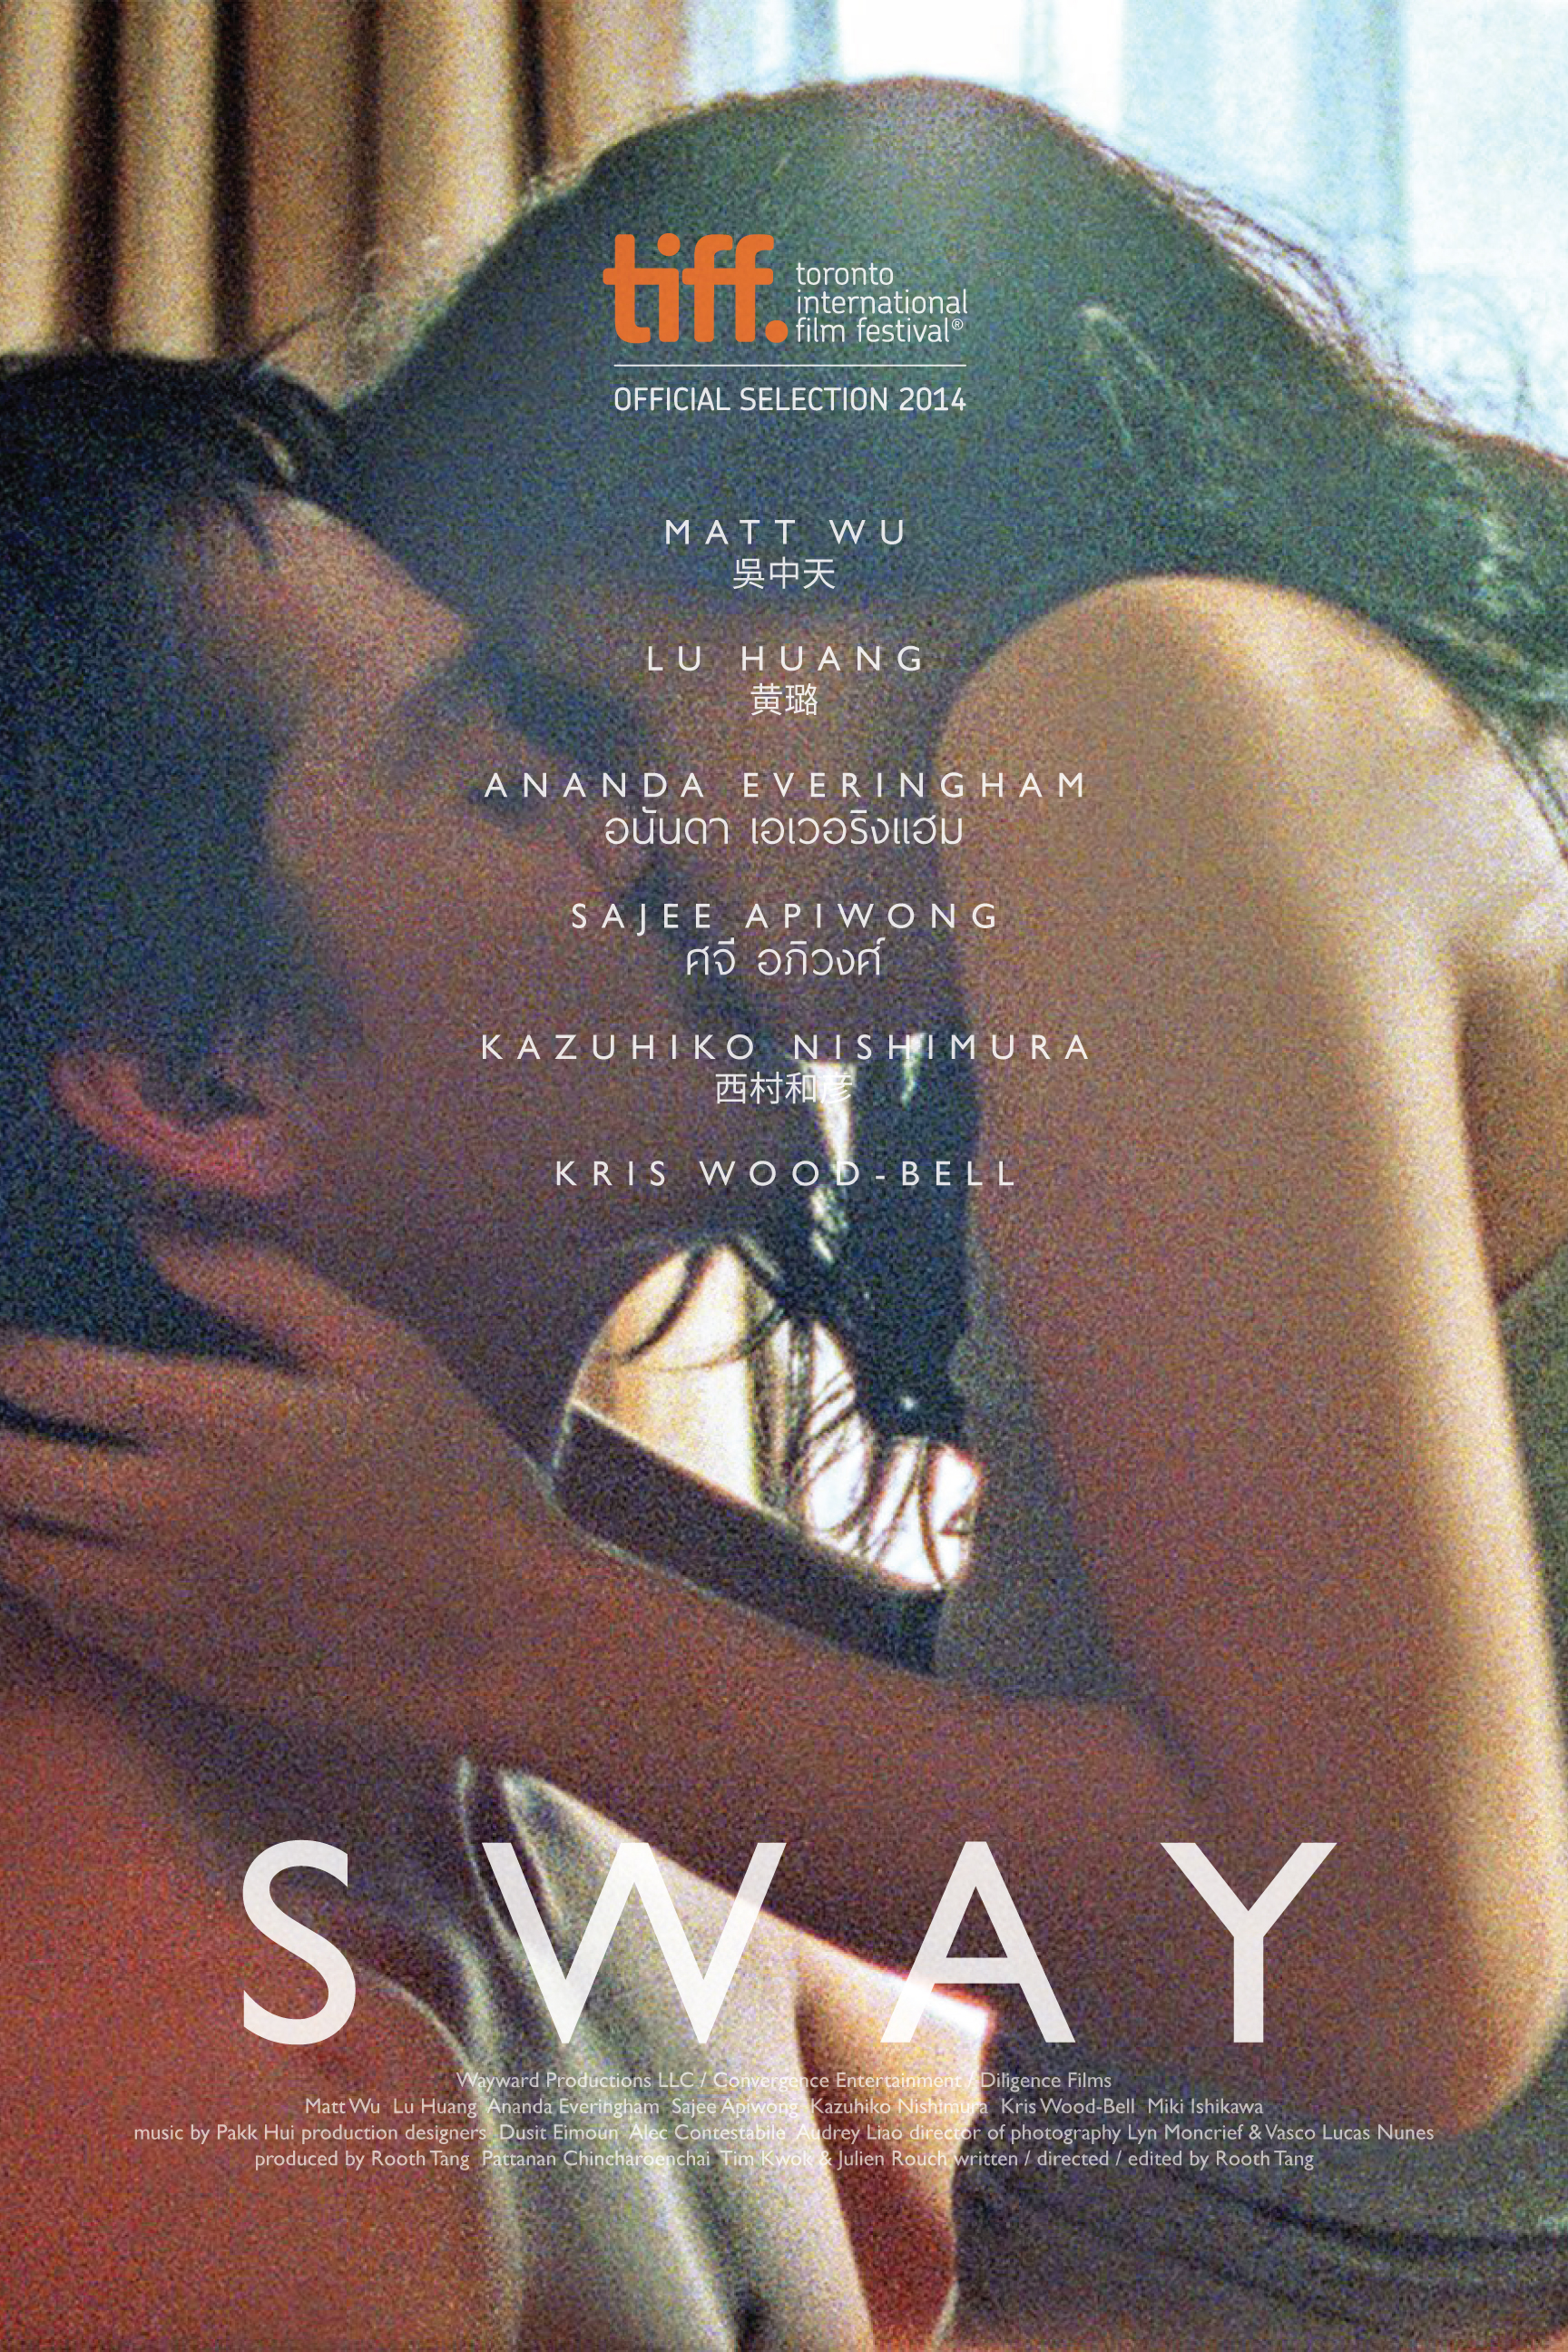 Sway (2016)